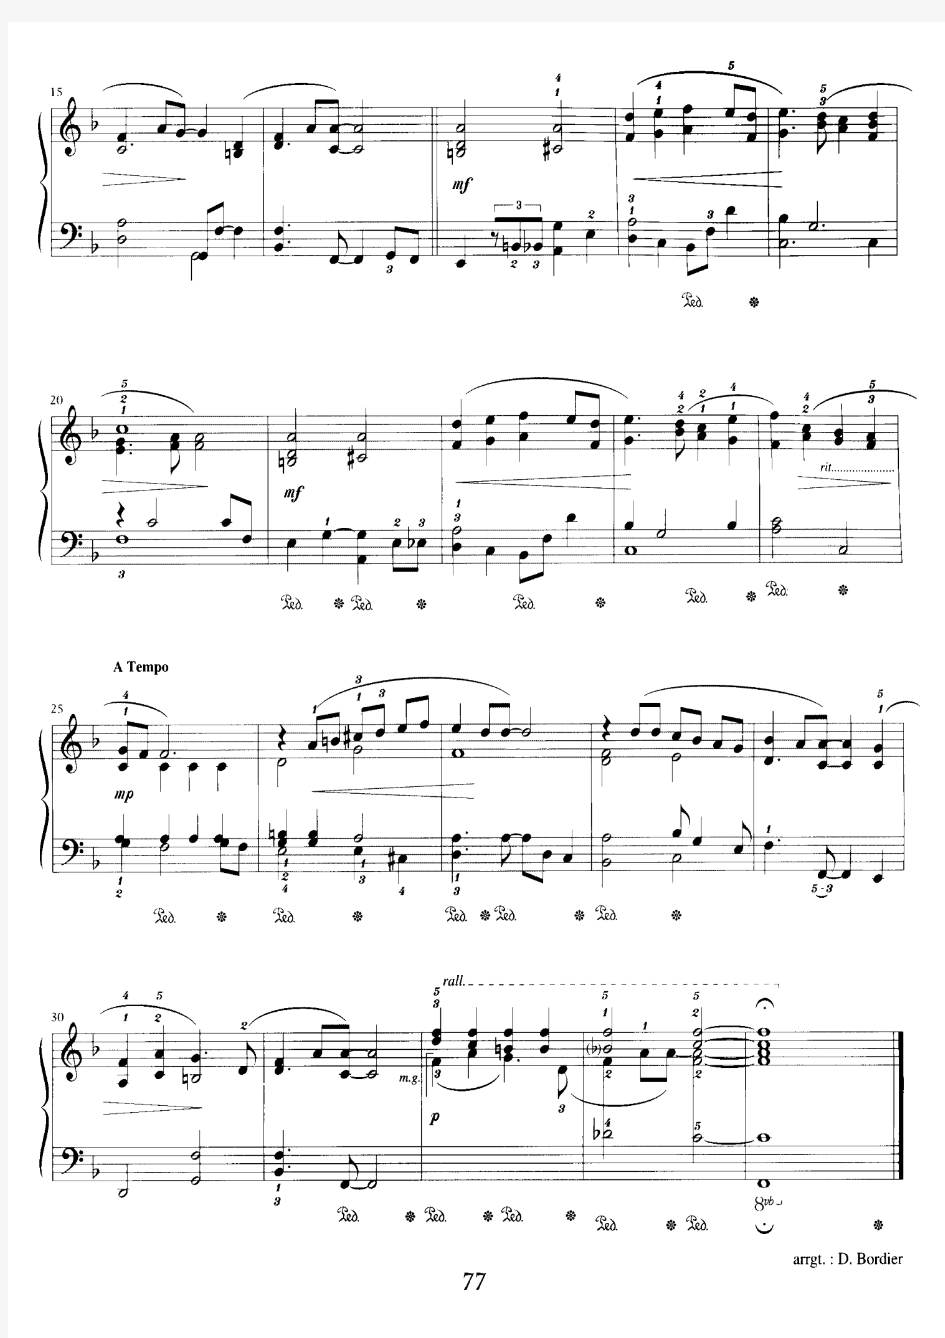 甲壳虫乐队(披头士) The Beatles-Yesterday V4 钢琴伴奏谱 声乐五线谱 欧美经典歌曲钢琴伴唱